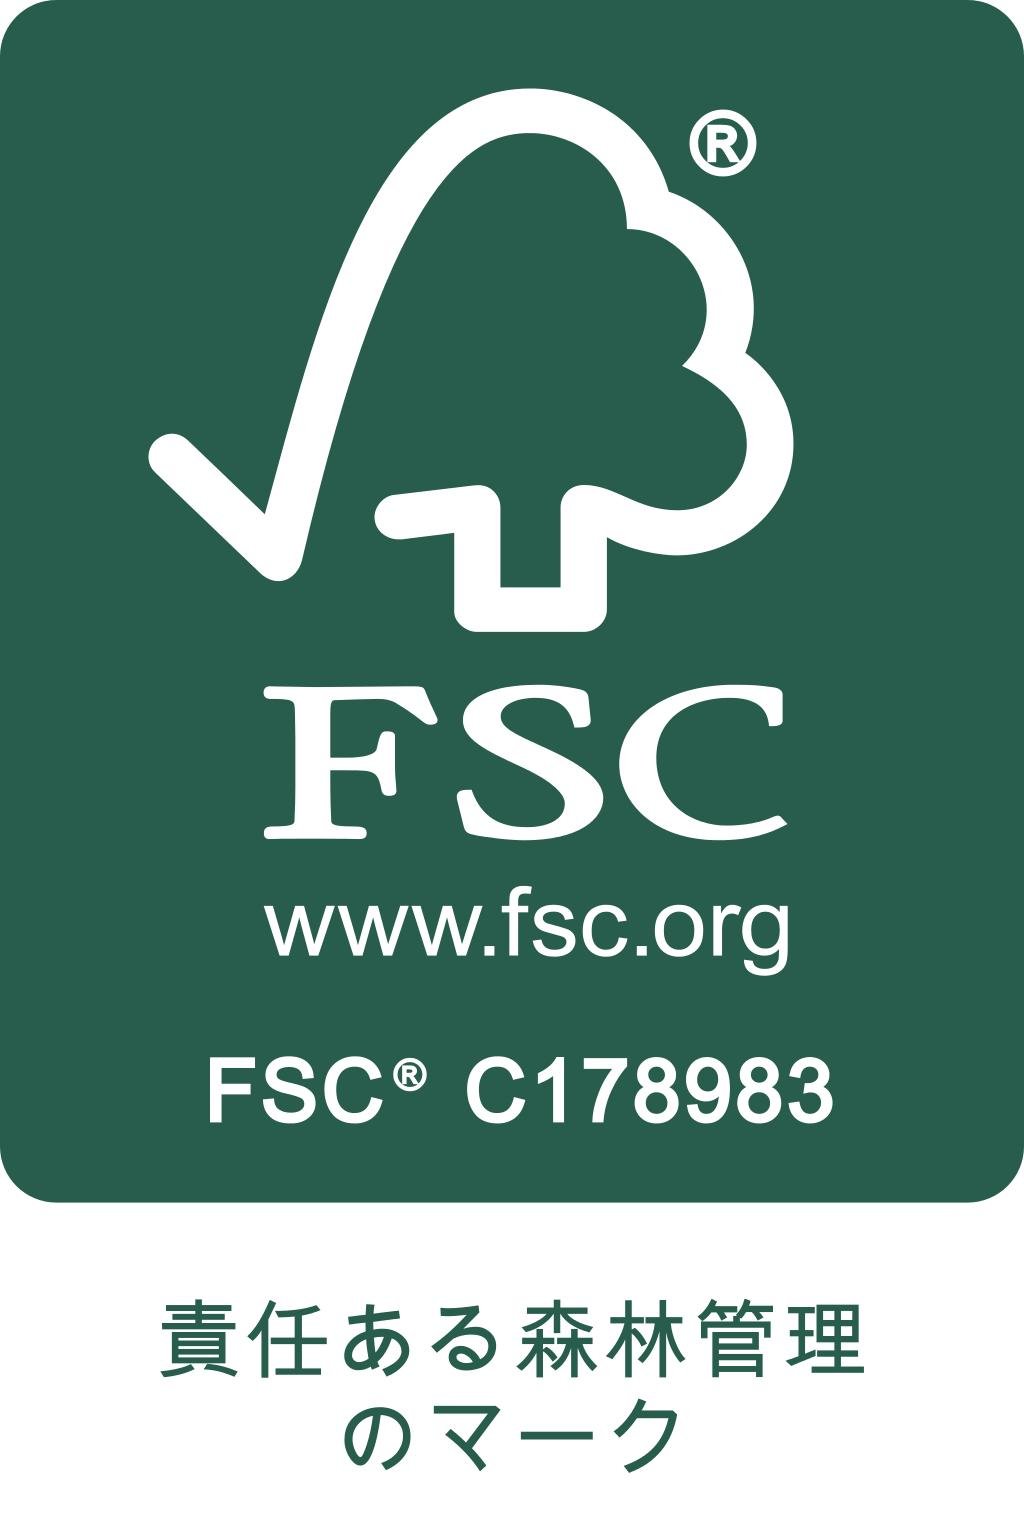 FSCFSC